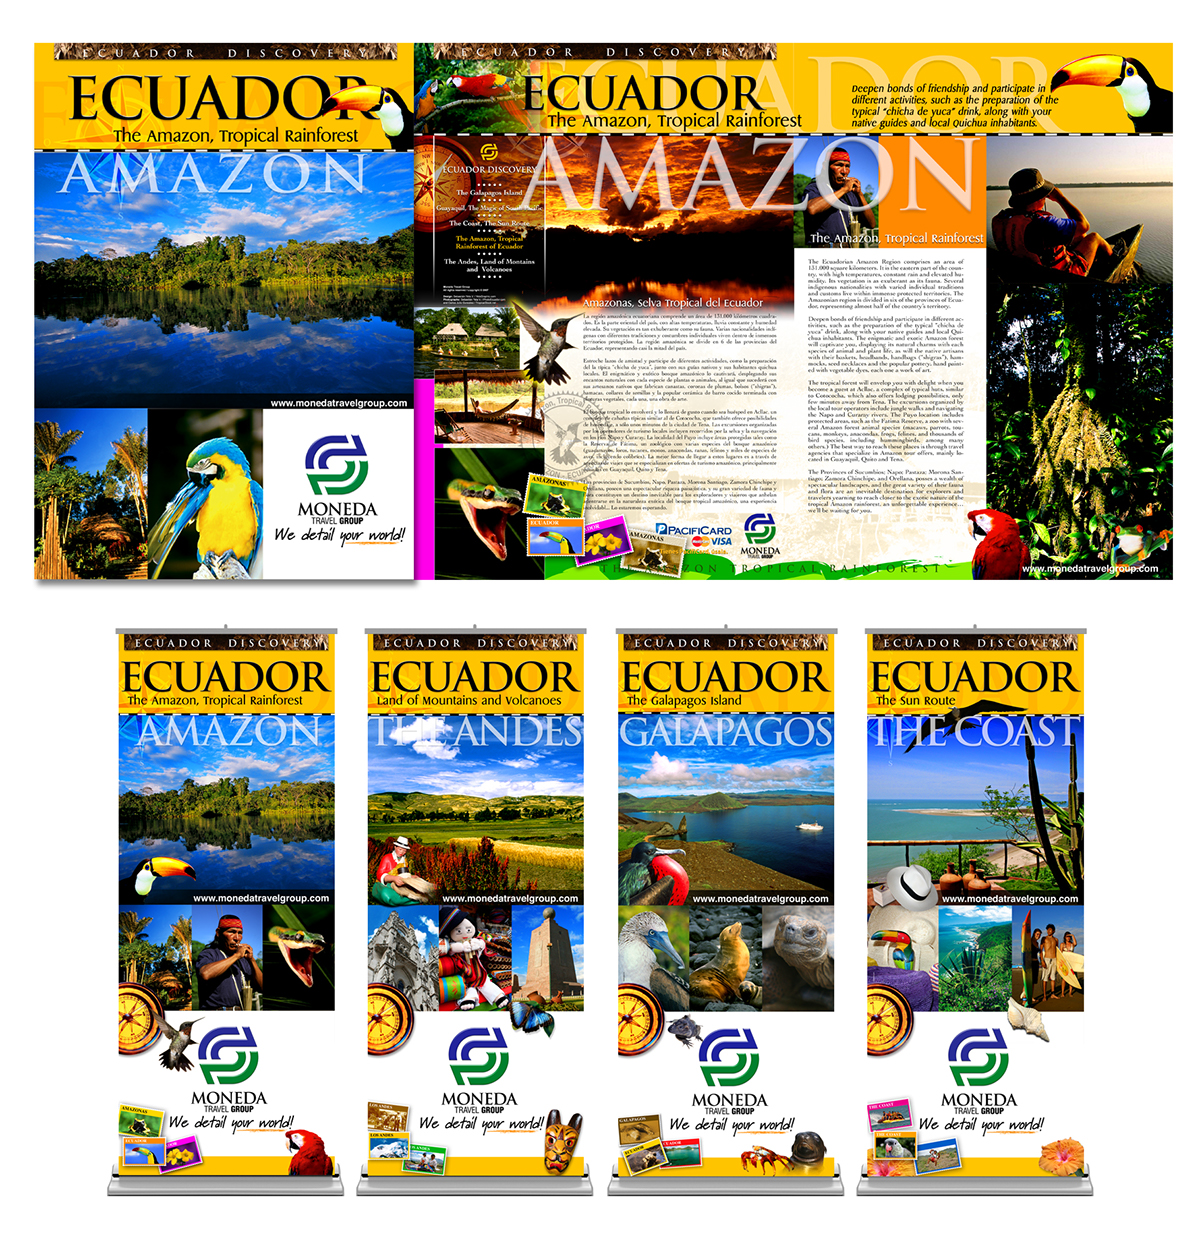 Barochure folleto publicidad Ecuador miami Galapagos material POP logo Travel